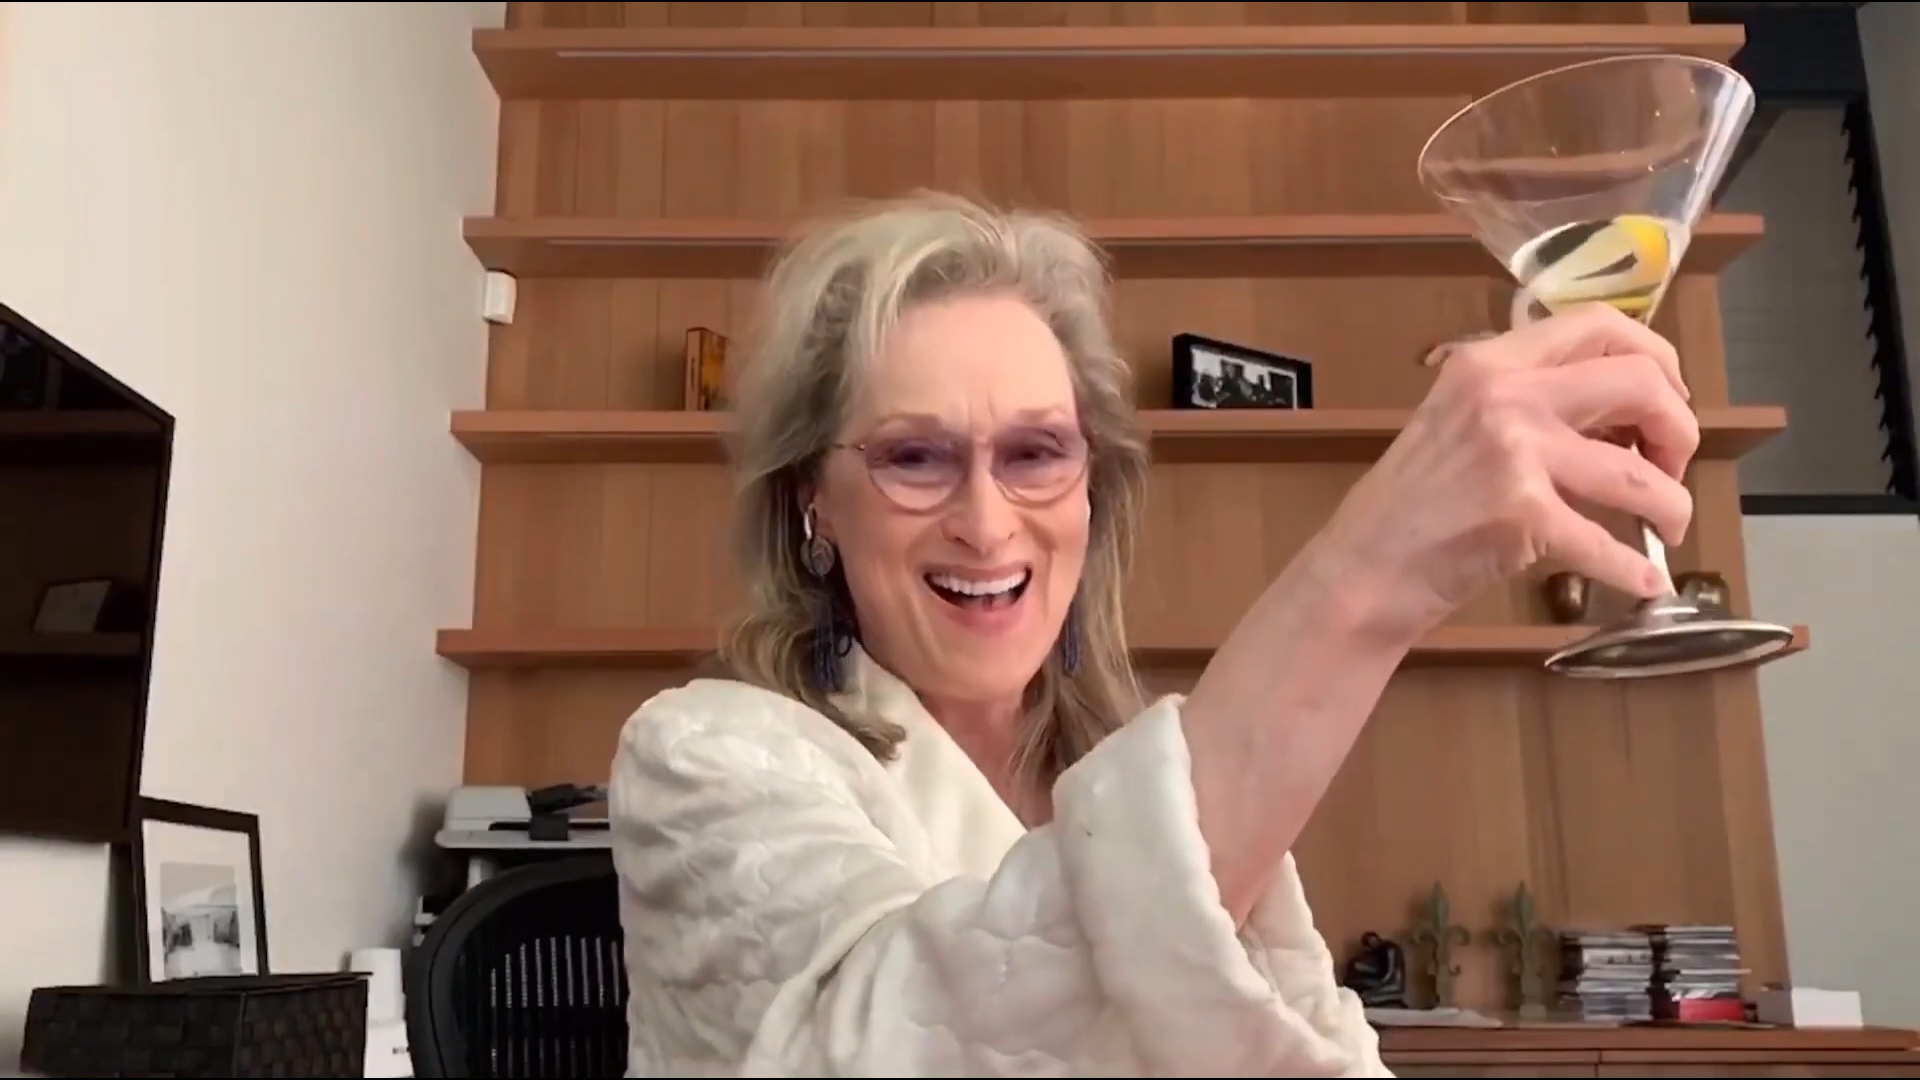 Meryl Streep Canto Y Se Emborracho En Bata Con Sus Amigas Famosas En Esta Divertida Videollamada Infobae